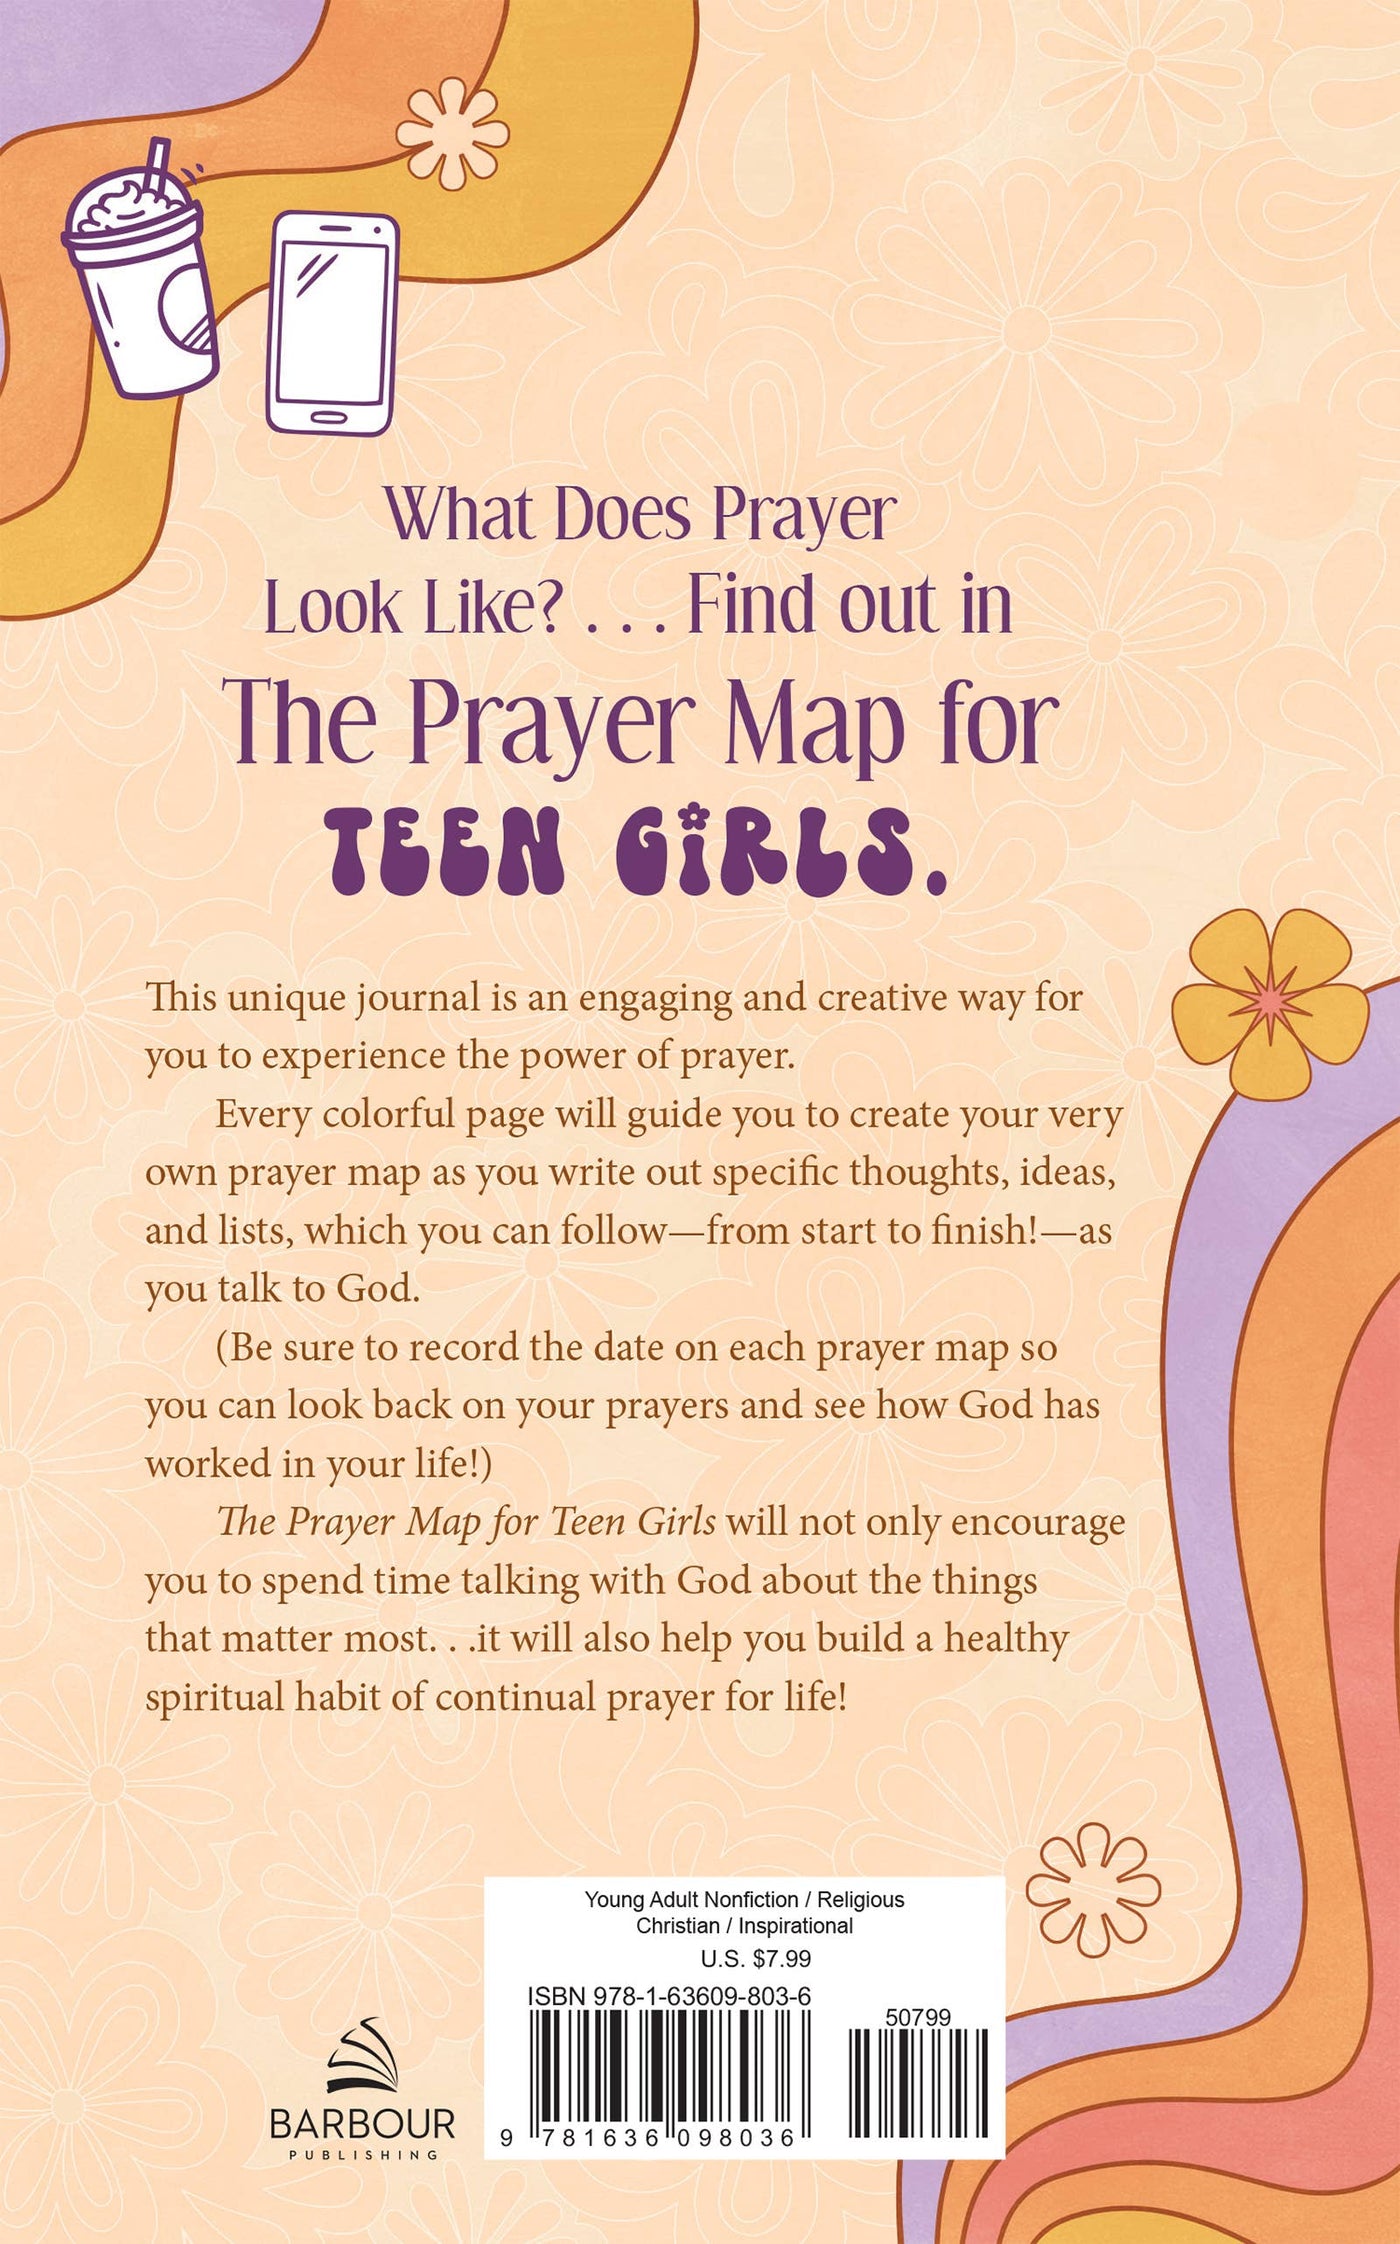 The Prayer Map for Teen Girls